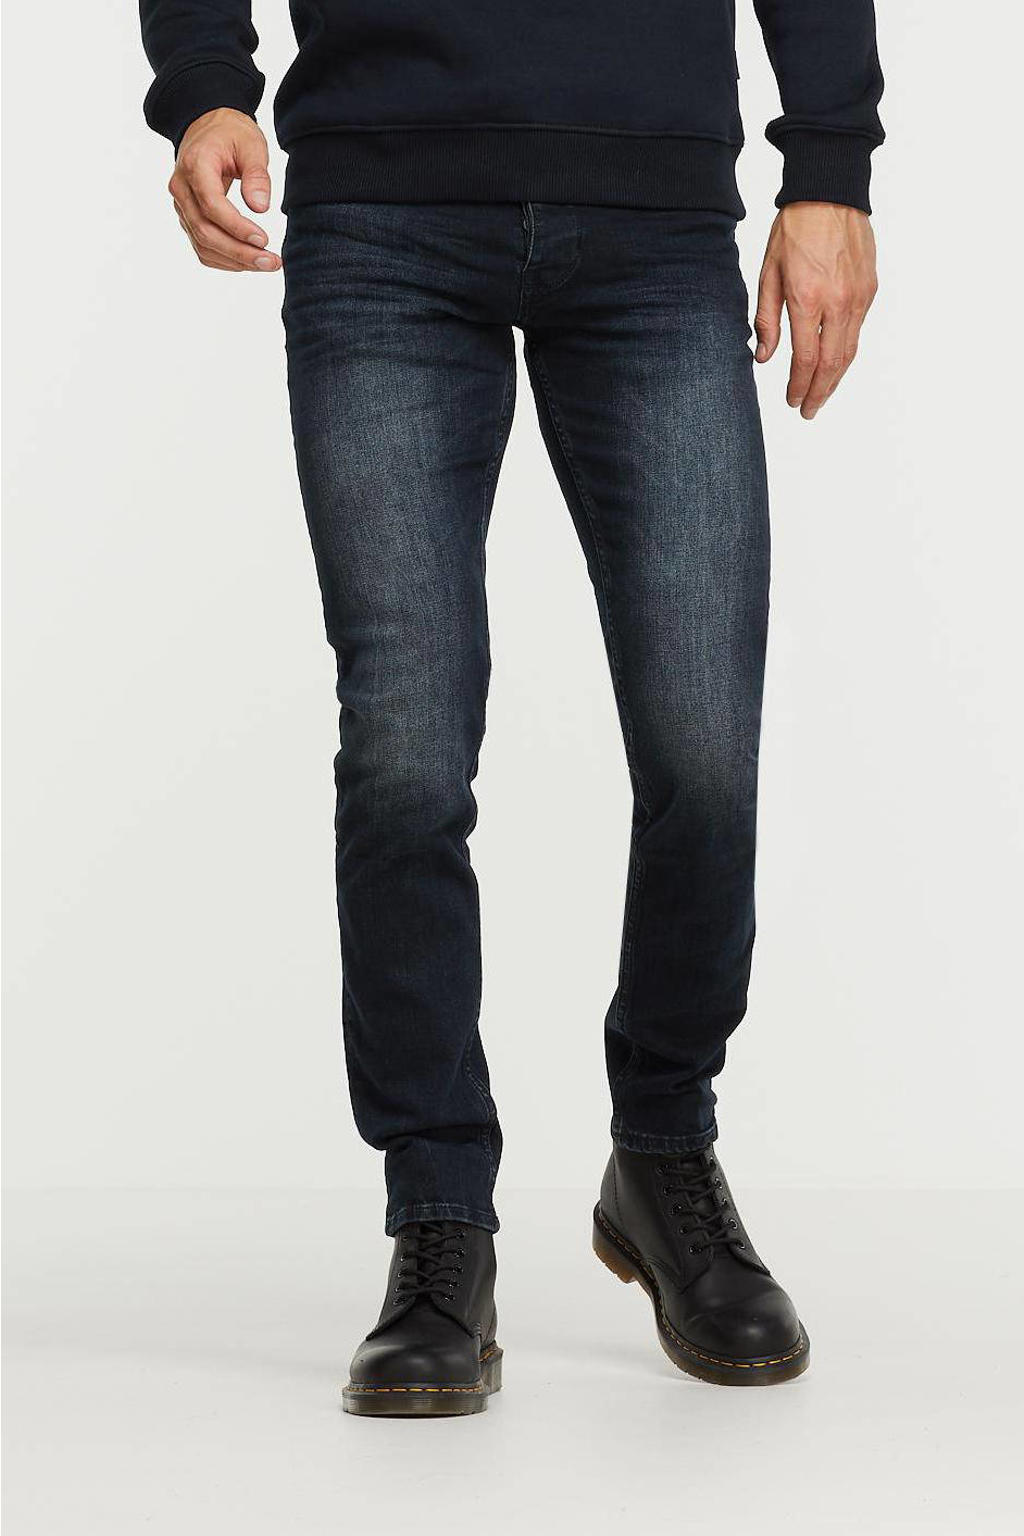 Purewhite slim fit jeans The Stan W0103 ESSENTIALS denim dark blue